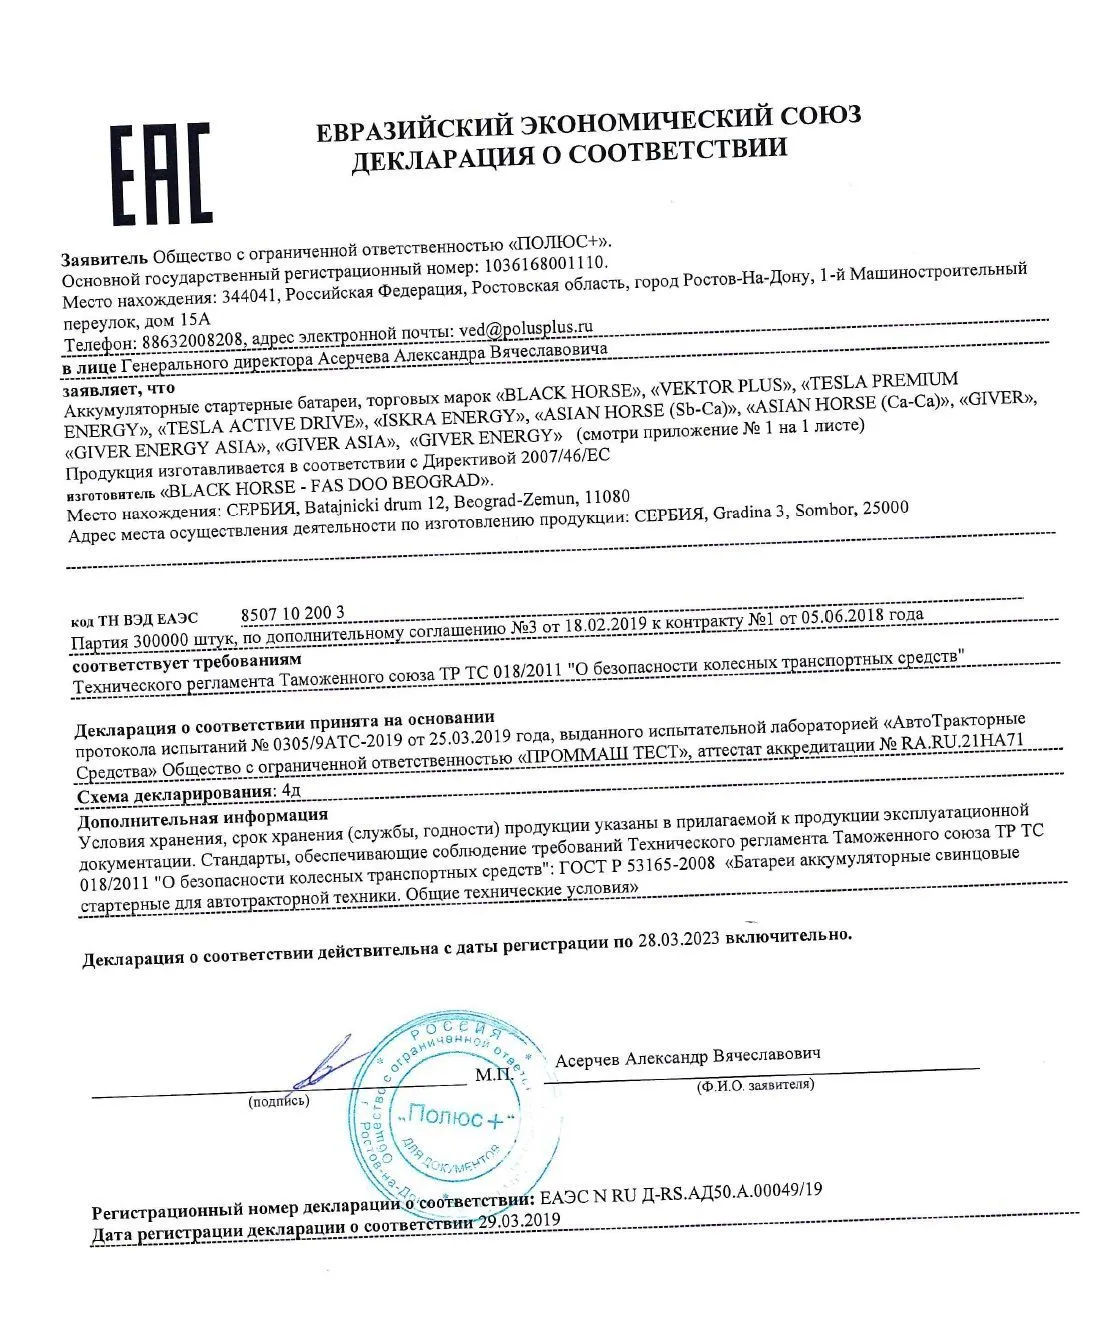 Сертификат соответствия Black Horse Fas Doo Beograd (Сербия)